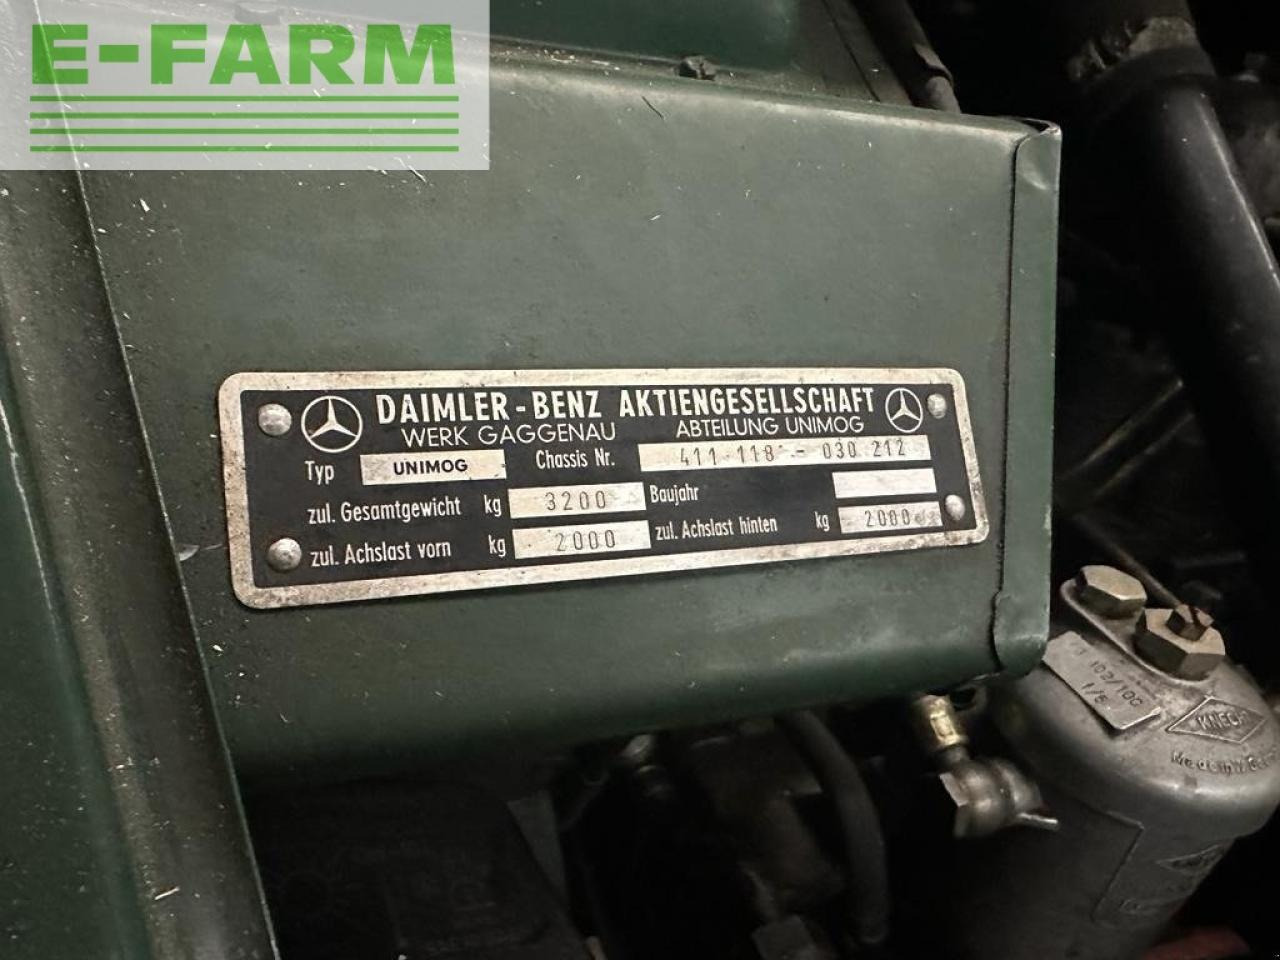 Farm tractor Mercedes-Benz u411 agrar heckhydraulik 2dw bj65: picture 6